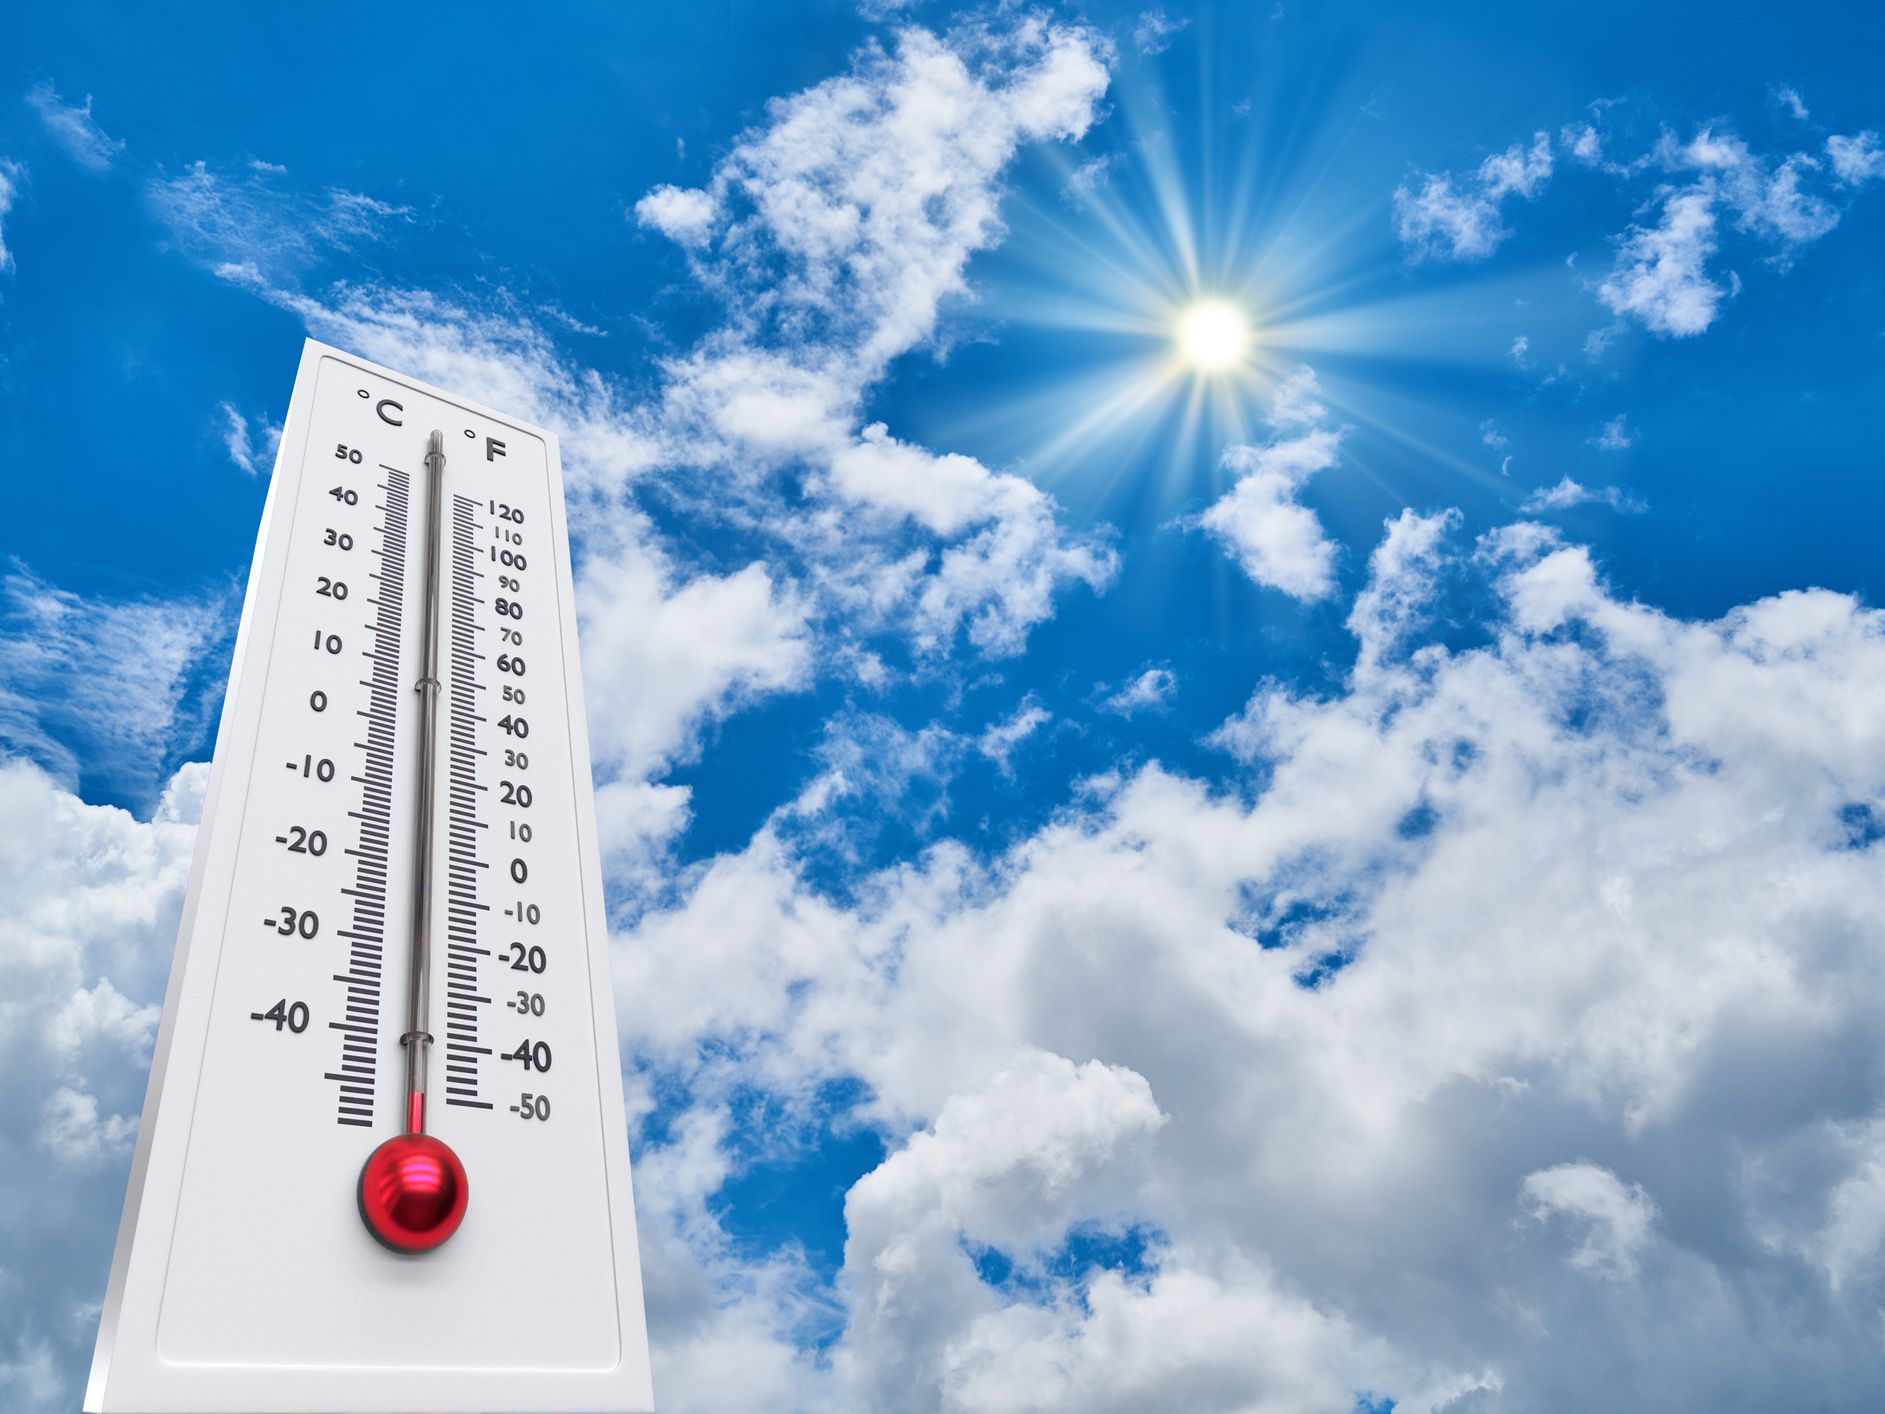 საქართველოში ტემპერატურა 39 გრადუსამდე მიაღწევს - ნახეთ როგორია უახლოესი დღეების პროგნოზი